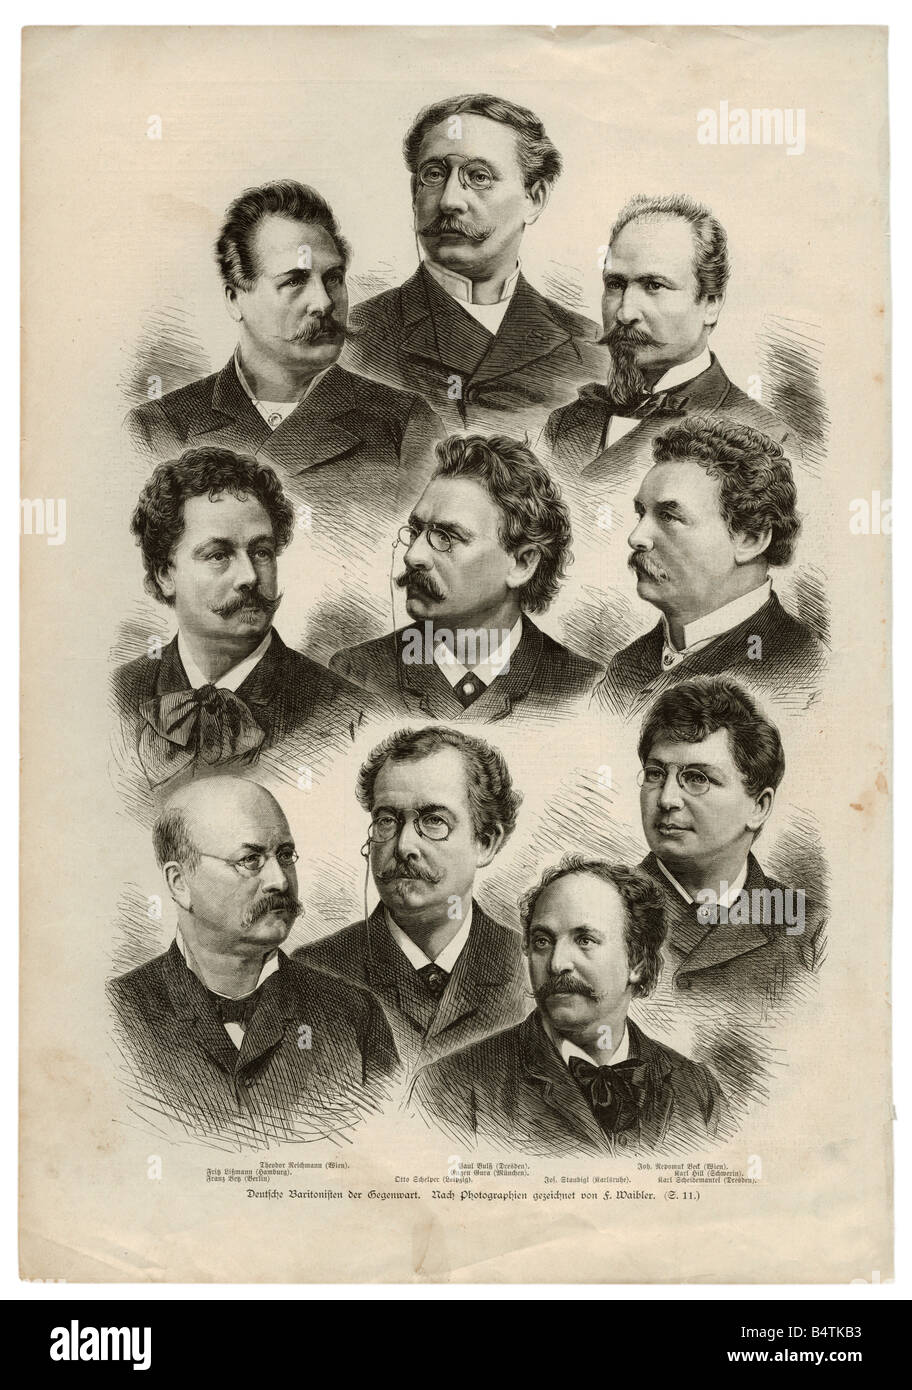 Sammelpapier, "deutsche Baritone der Gegenwart", Gravur nach Fotografie von F. Waibler, 19. Jahrhundert, Stockfoto